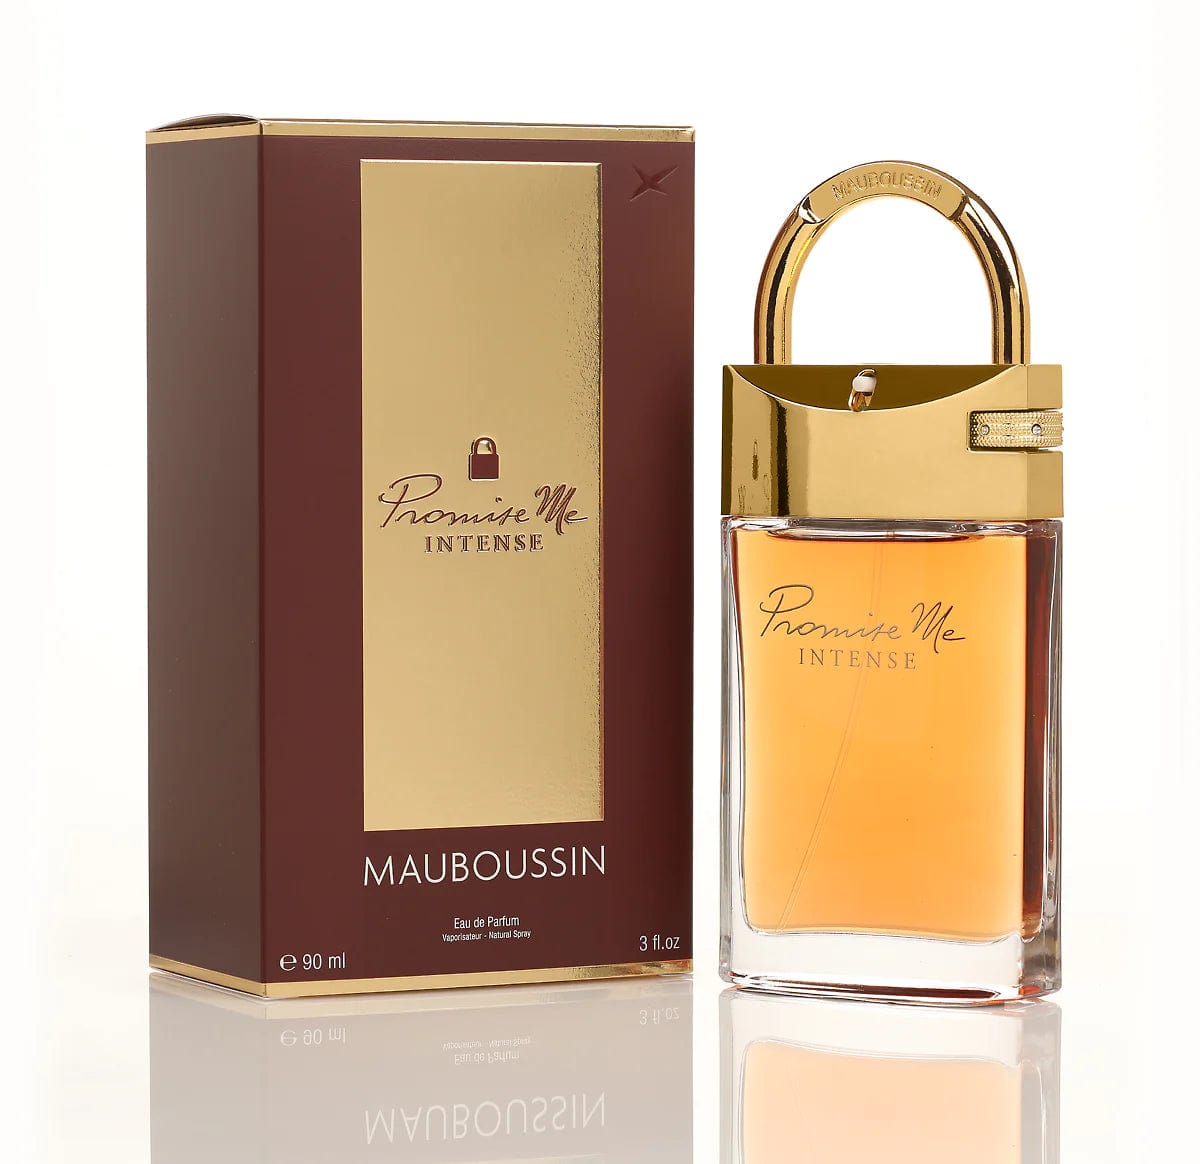 Mauboussin - Promise me intense eau de parfum femme - 90 ml - Mauboussin - Ethni Beauty Market